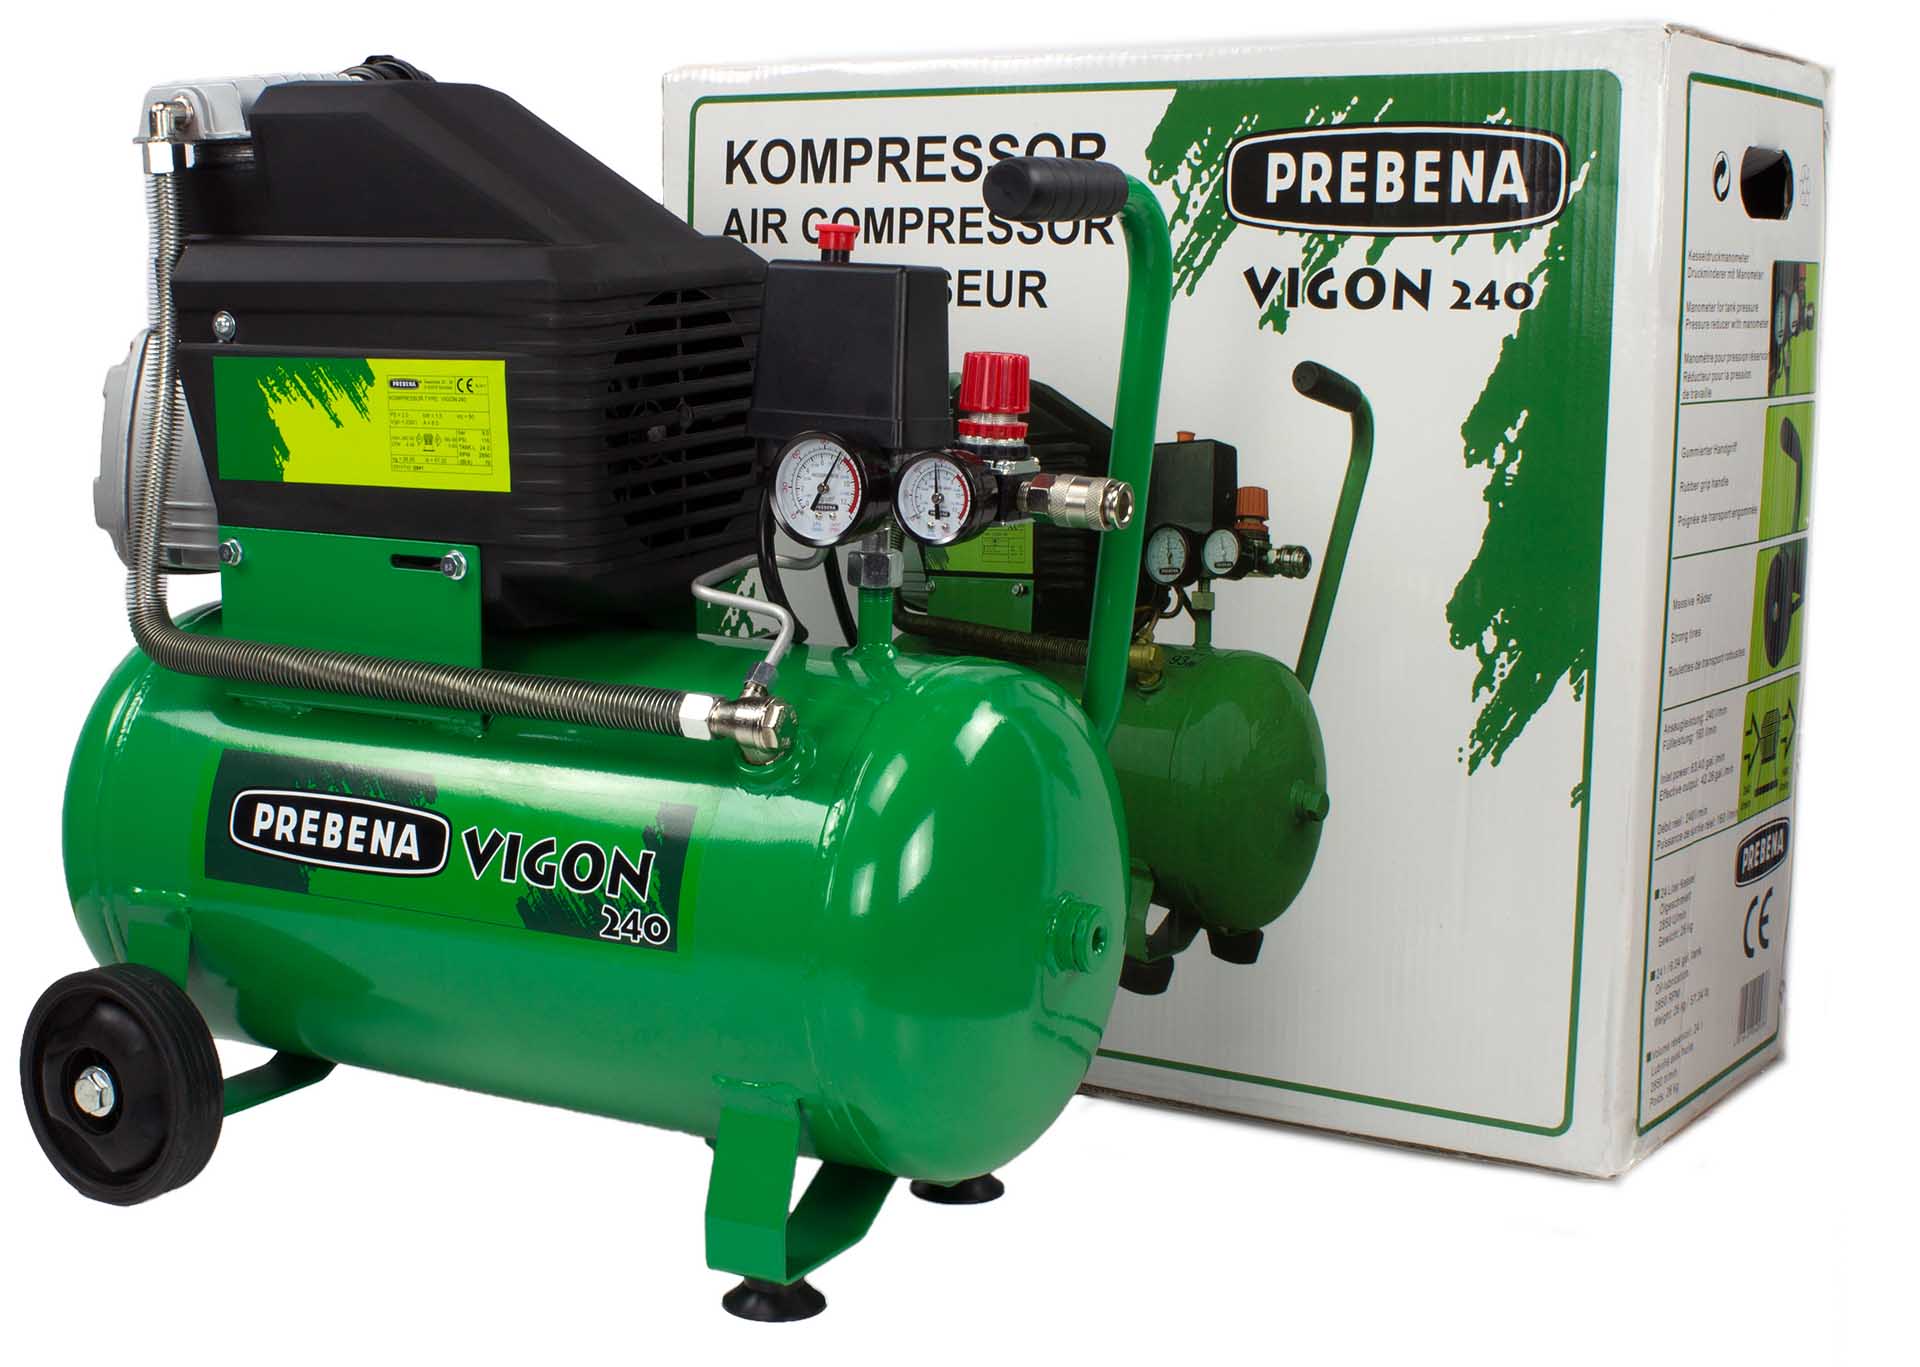 PREBENA - VIGON 240 Kompressor